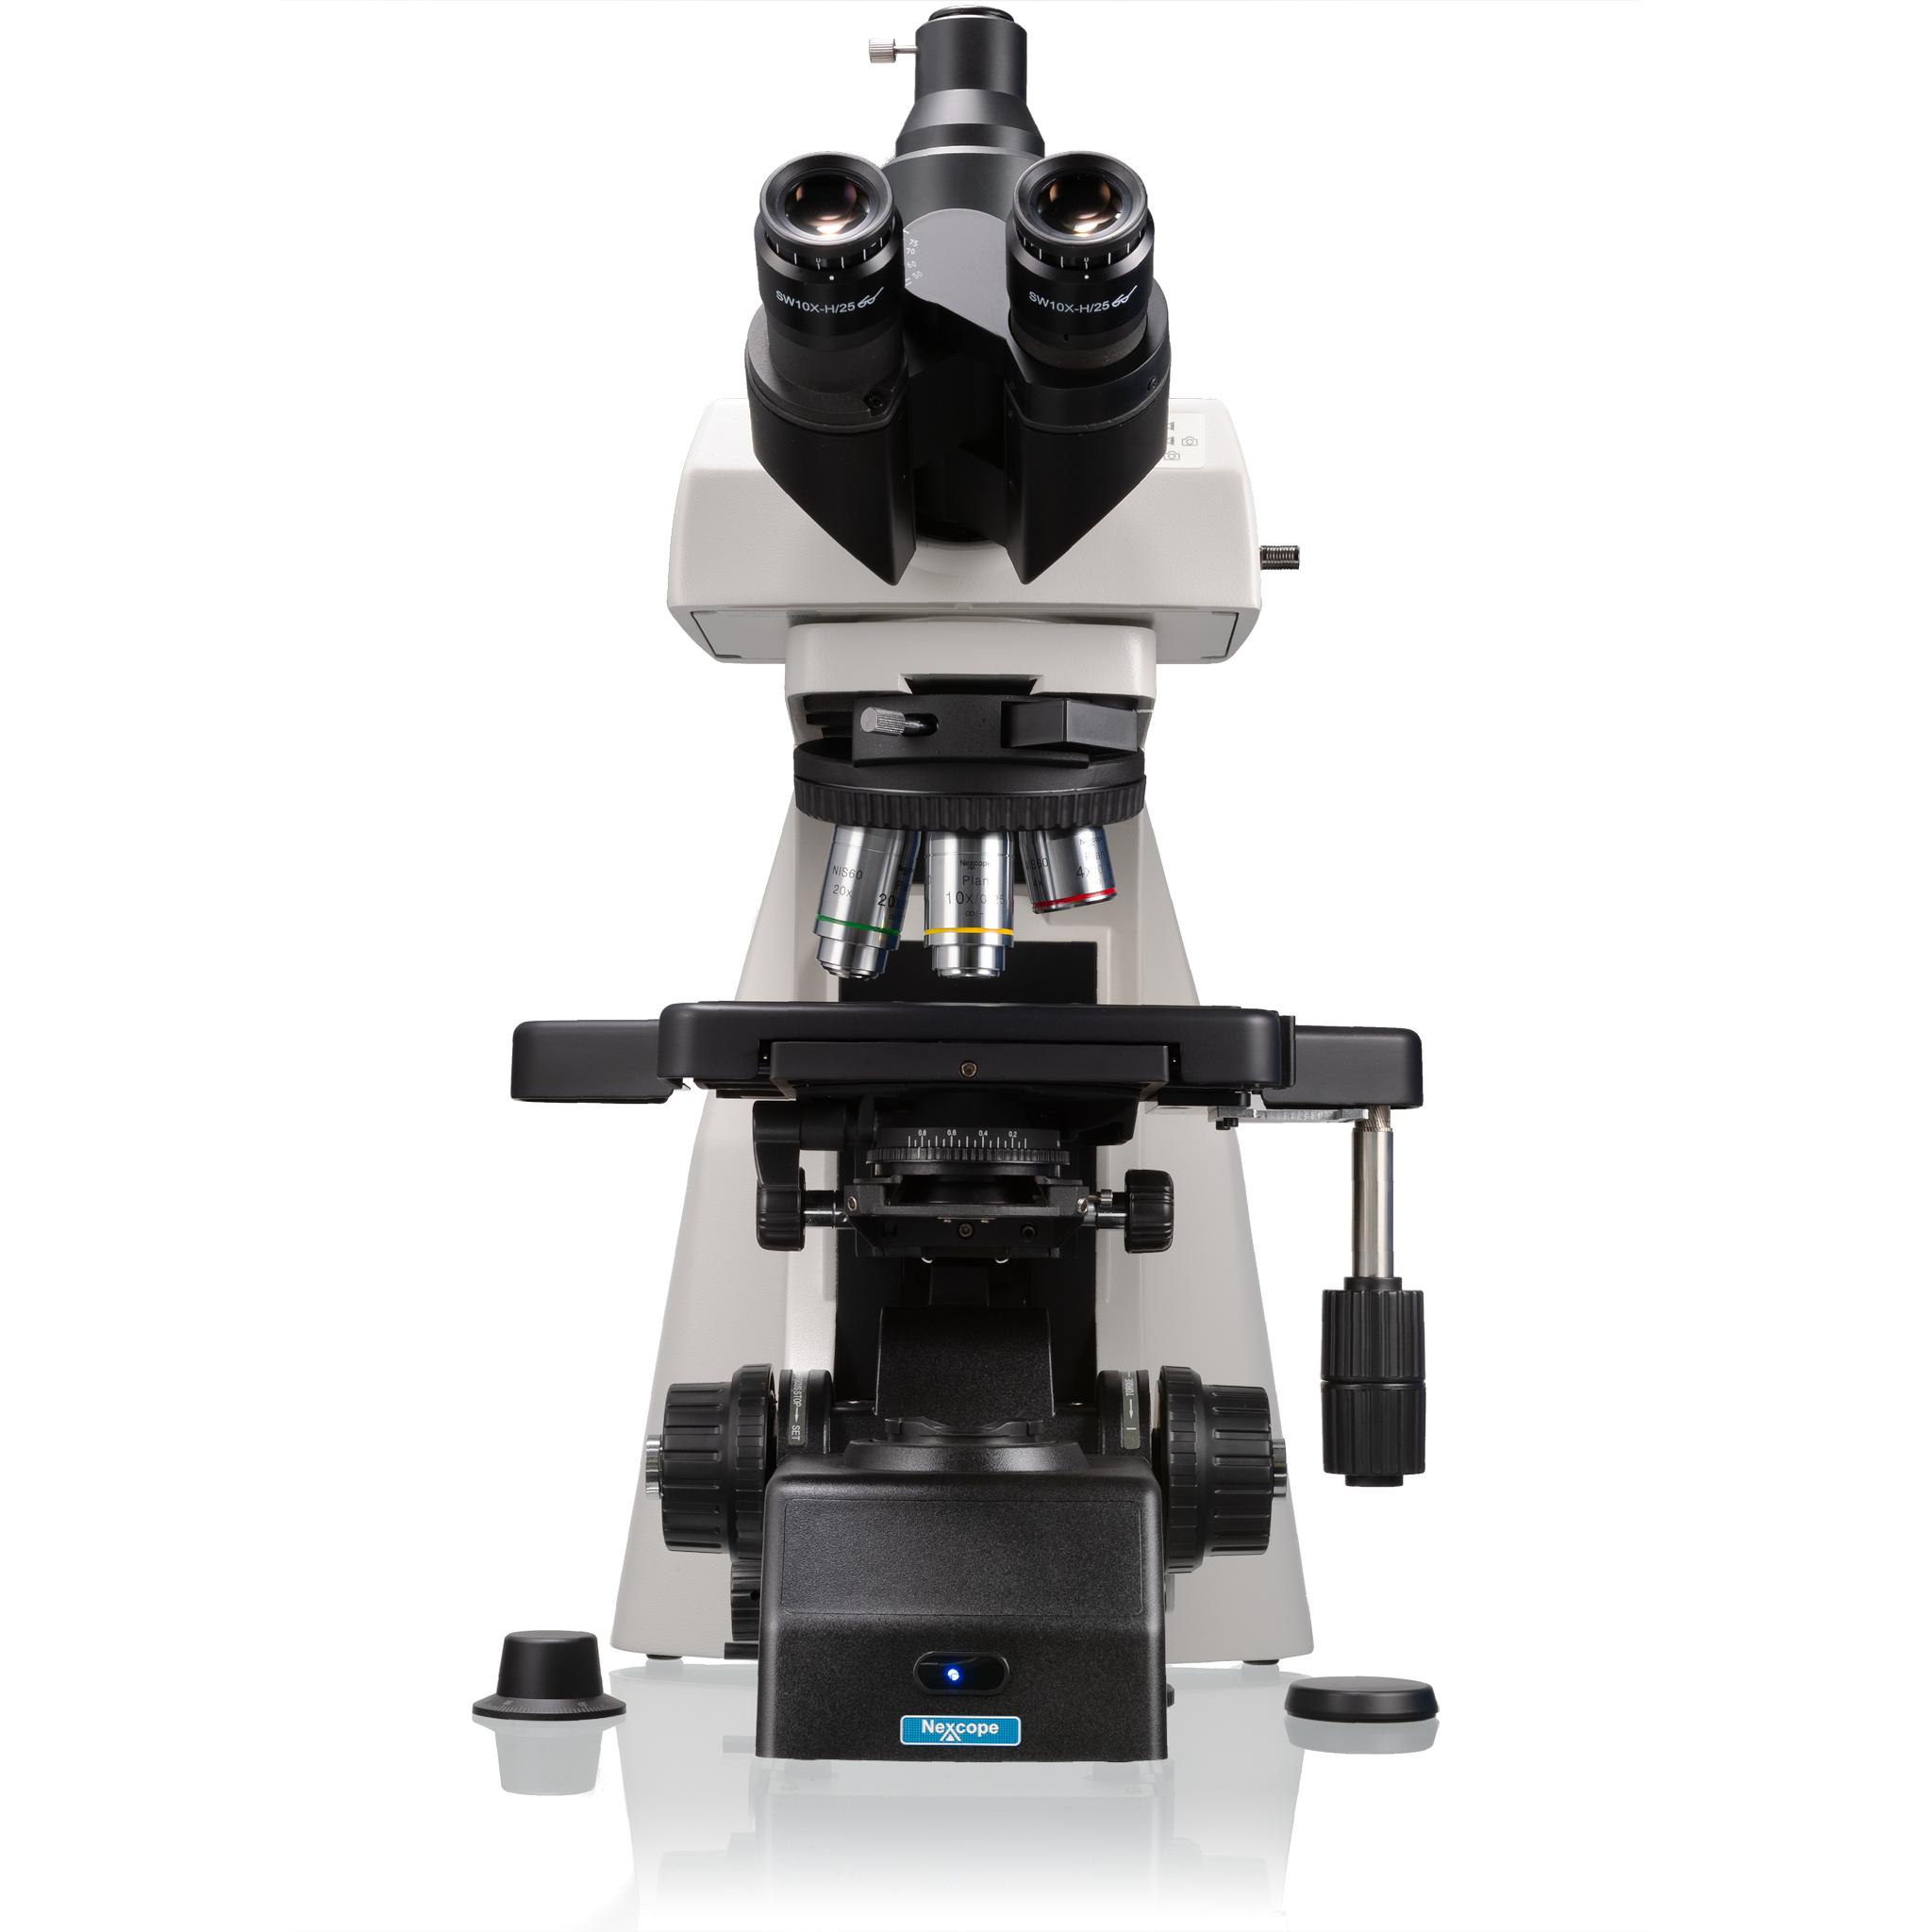 Nexcope NE910 professionelles Labor-Mikroskop mit hoher Ausbaufähigkeit